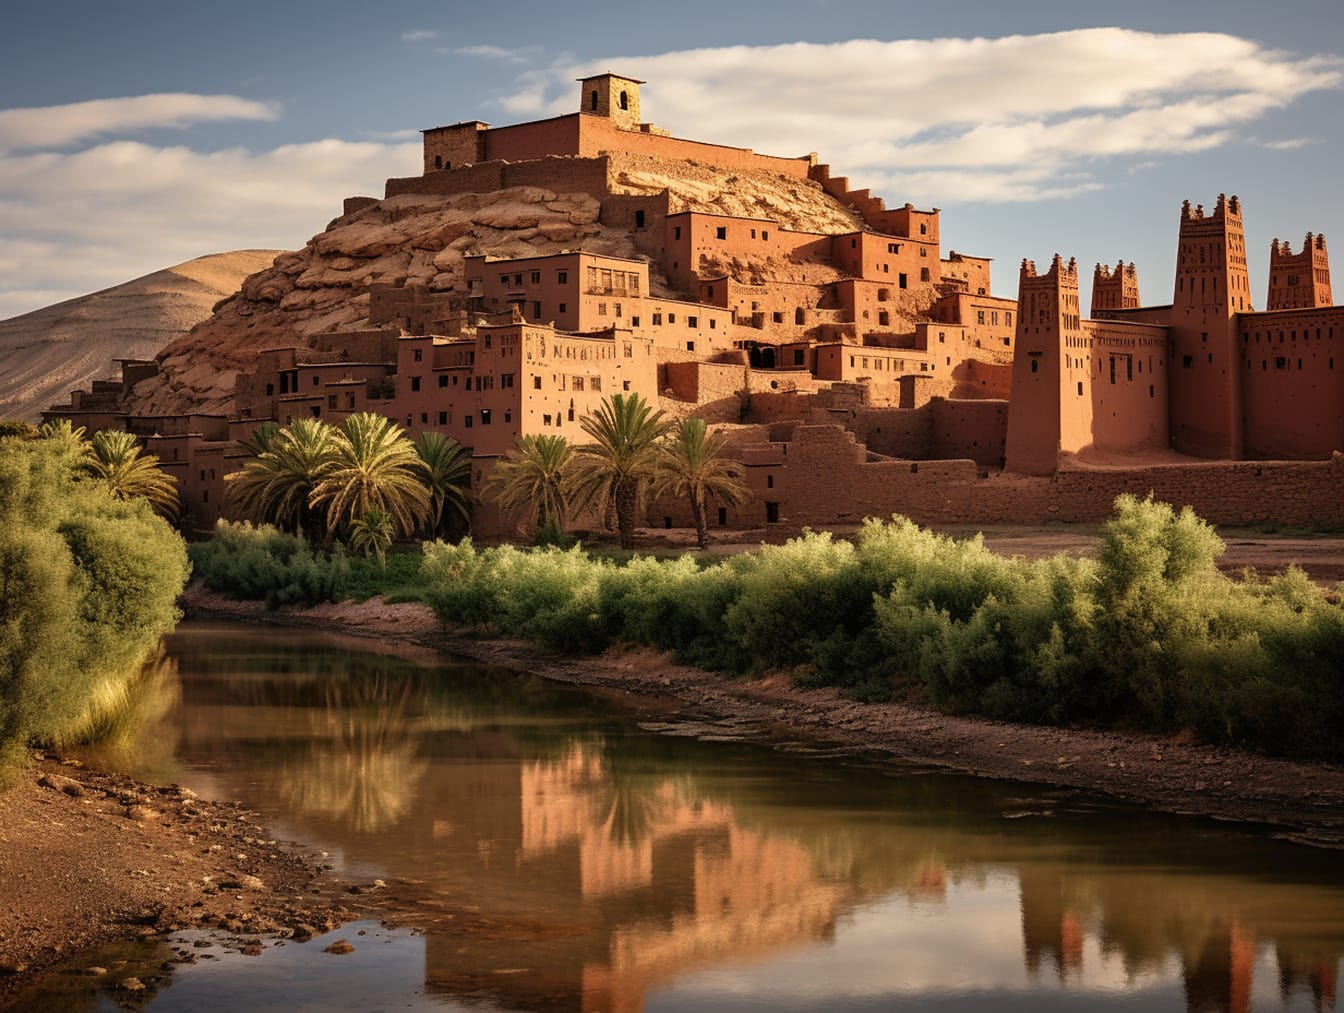 Povijesna utvrda u Maroku na brdu iznad rijeke